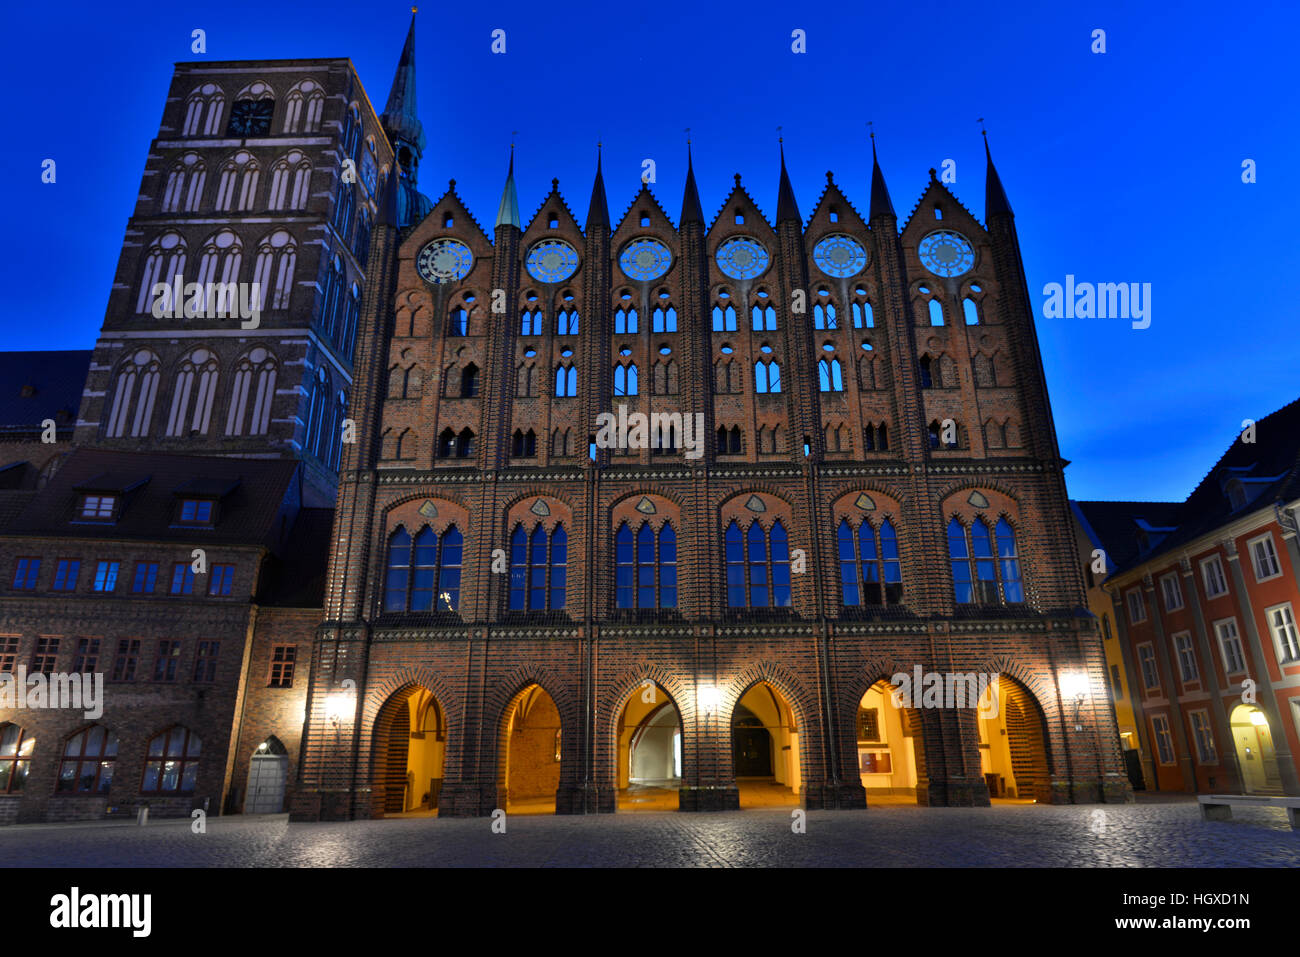 Rathaus, Alter Markt, Altstadt, Stralsund, Mecklenburg-Vorpommern, Allemagne Banque D'Images